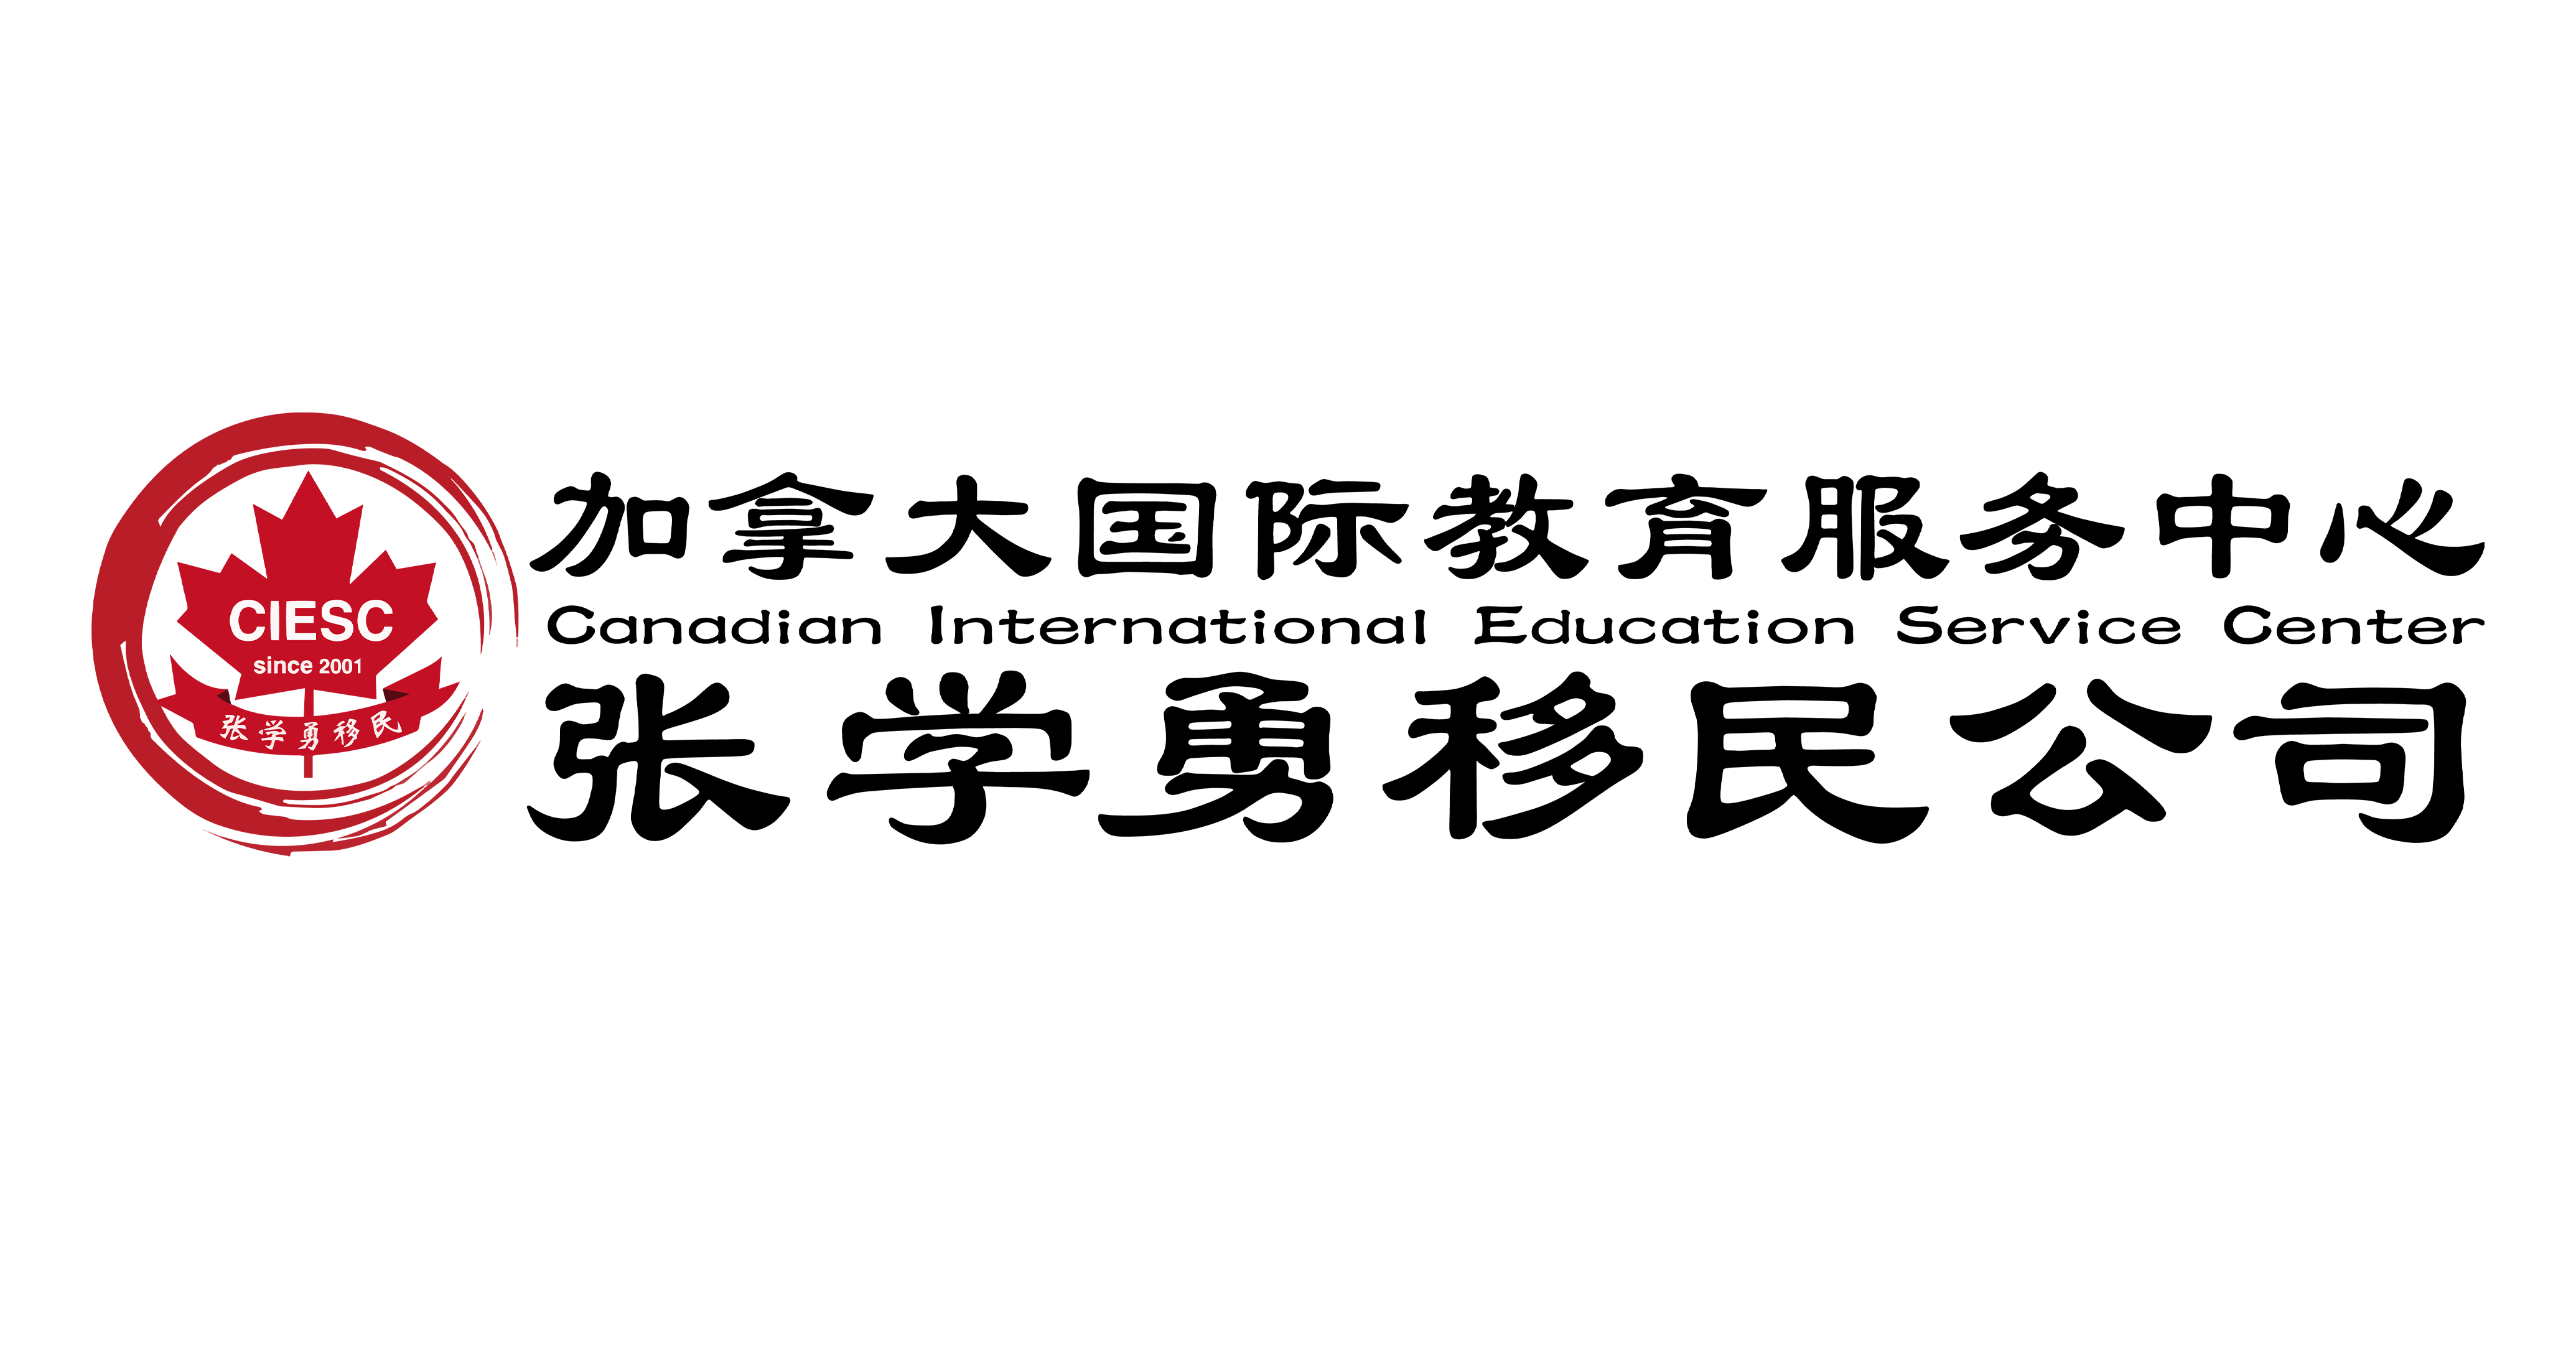 加拿大国际教育服务中心